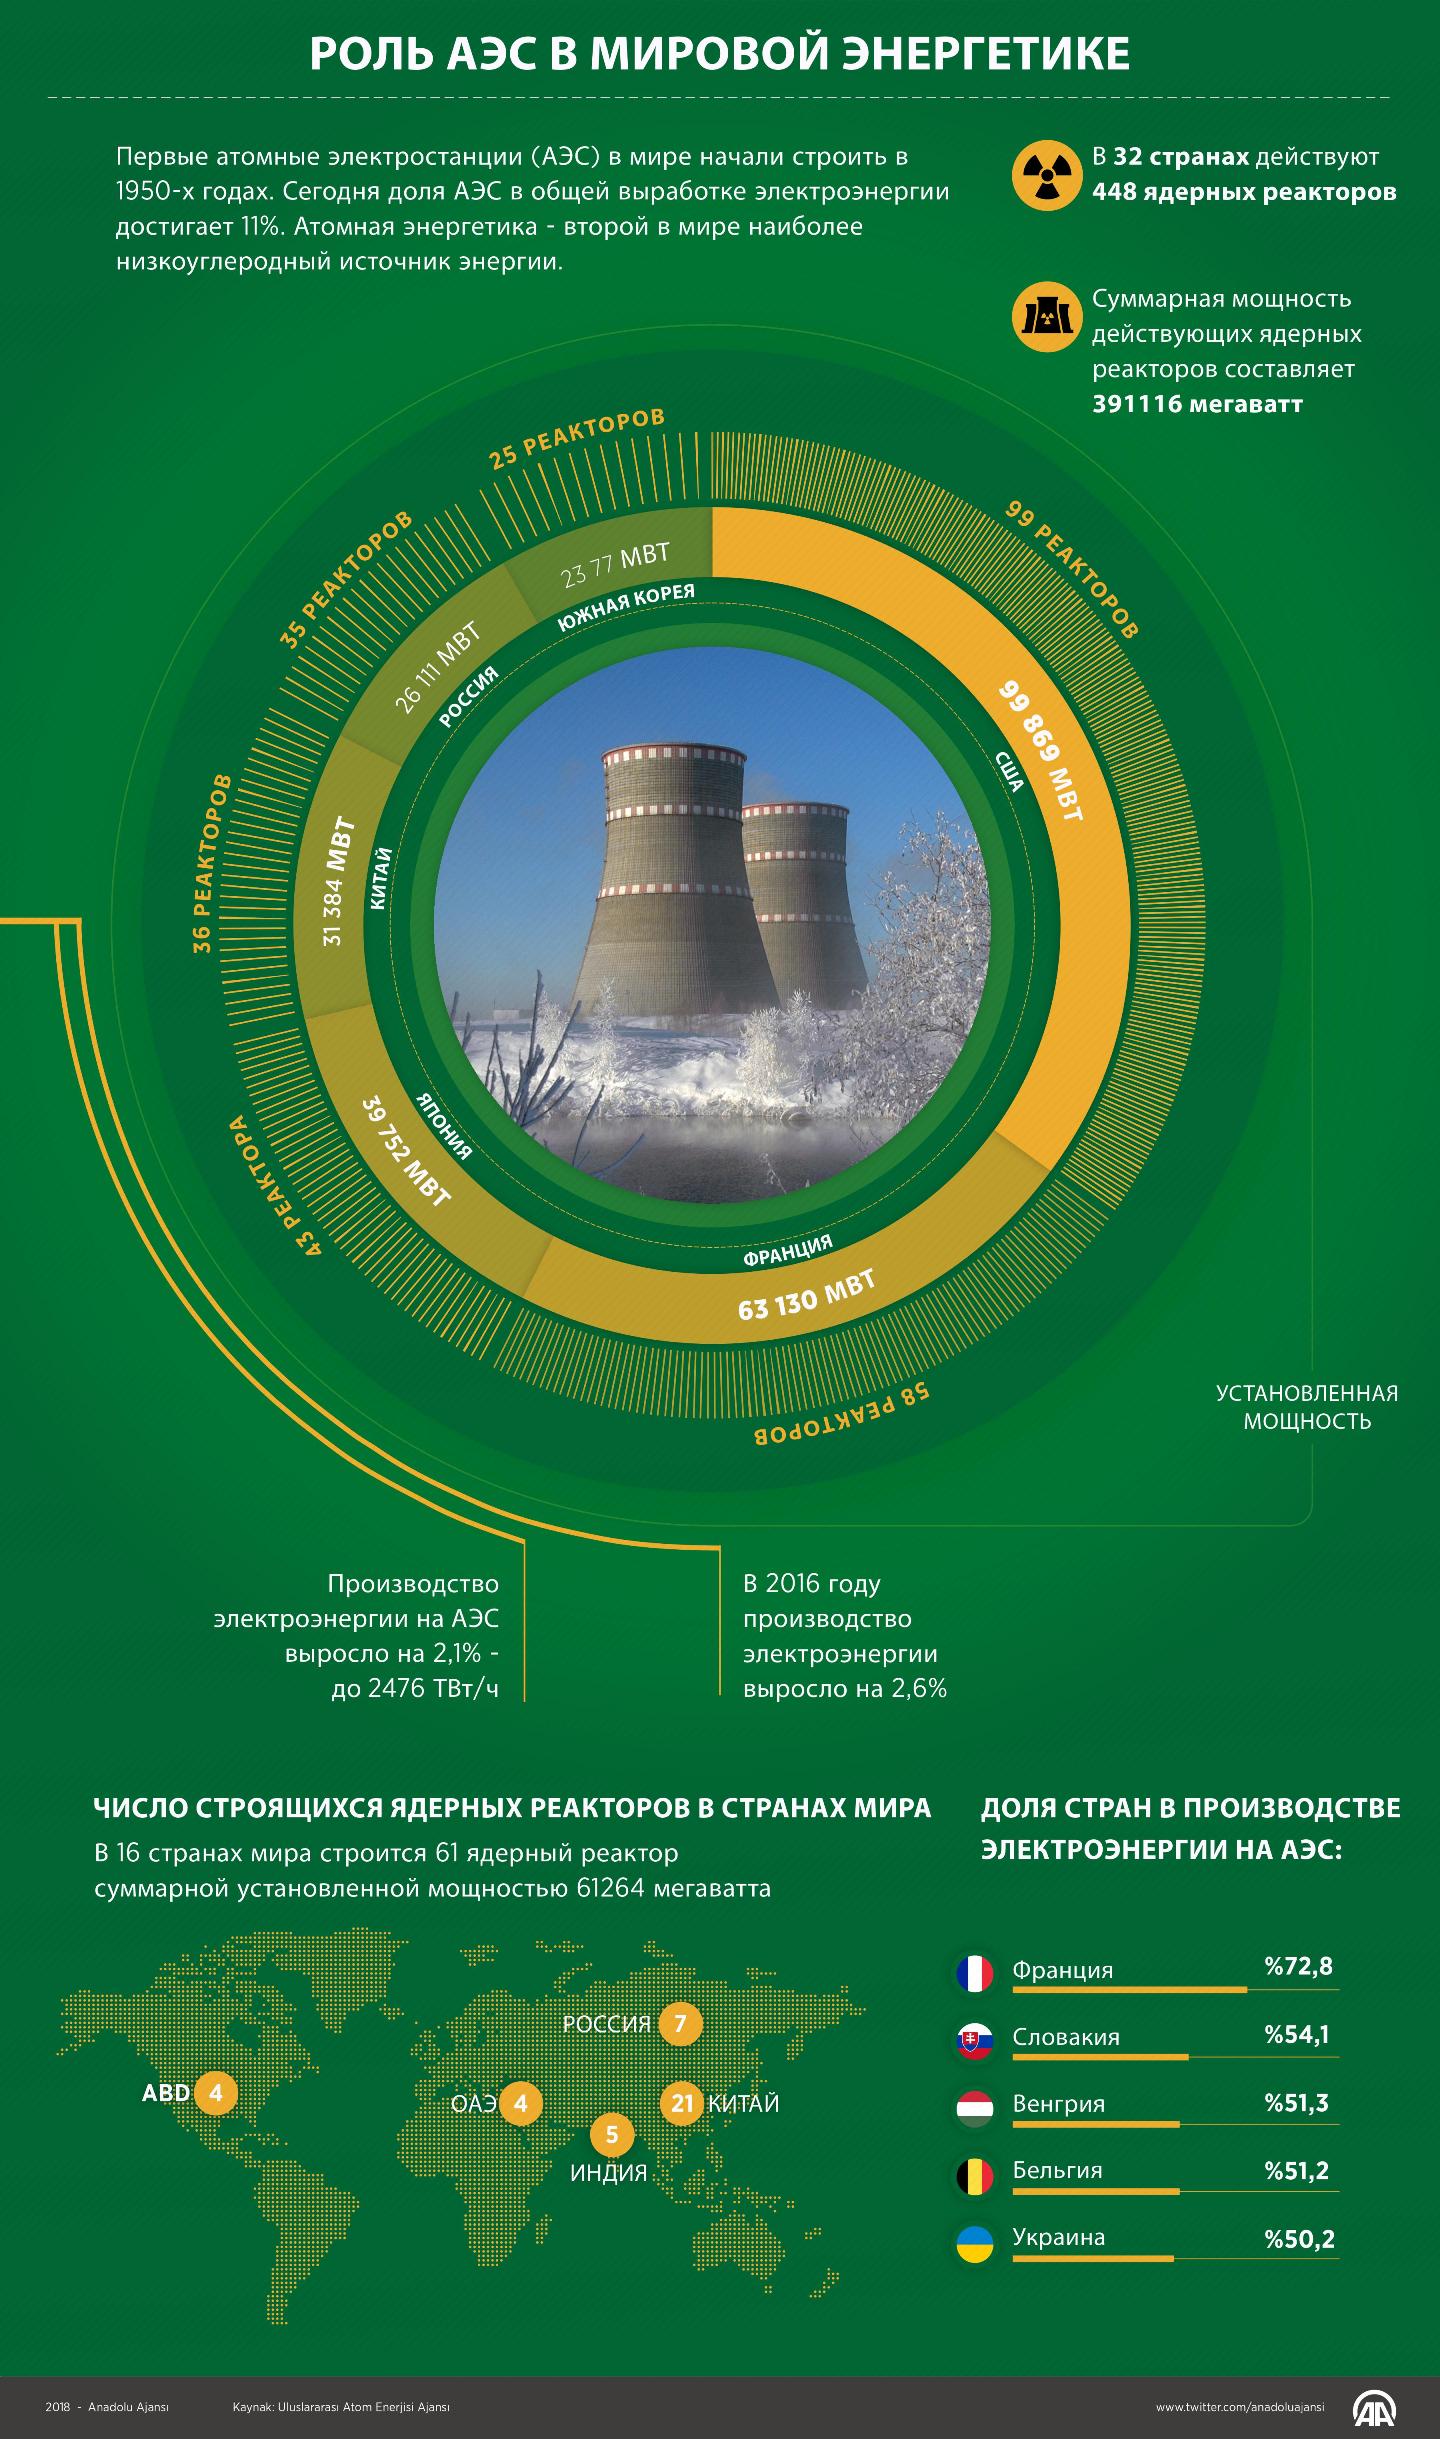 Роль АЭС в мировой энергетике